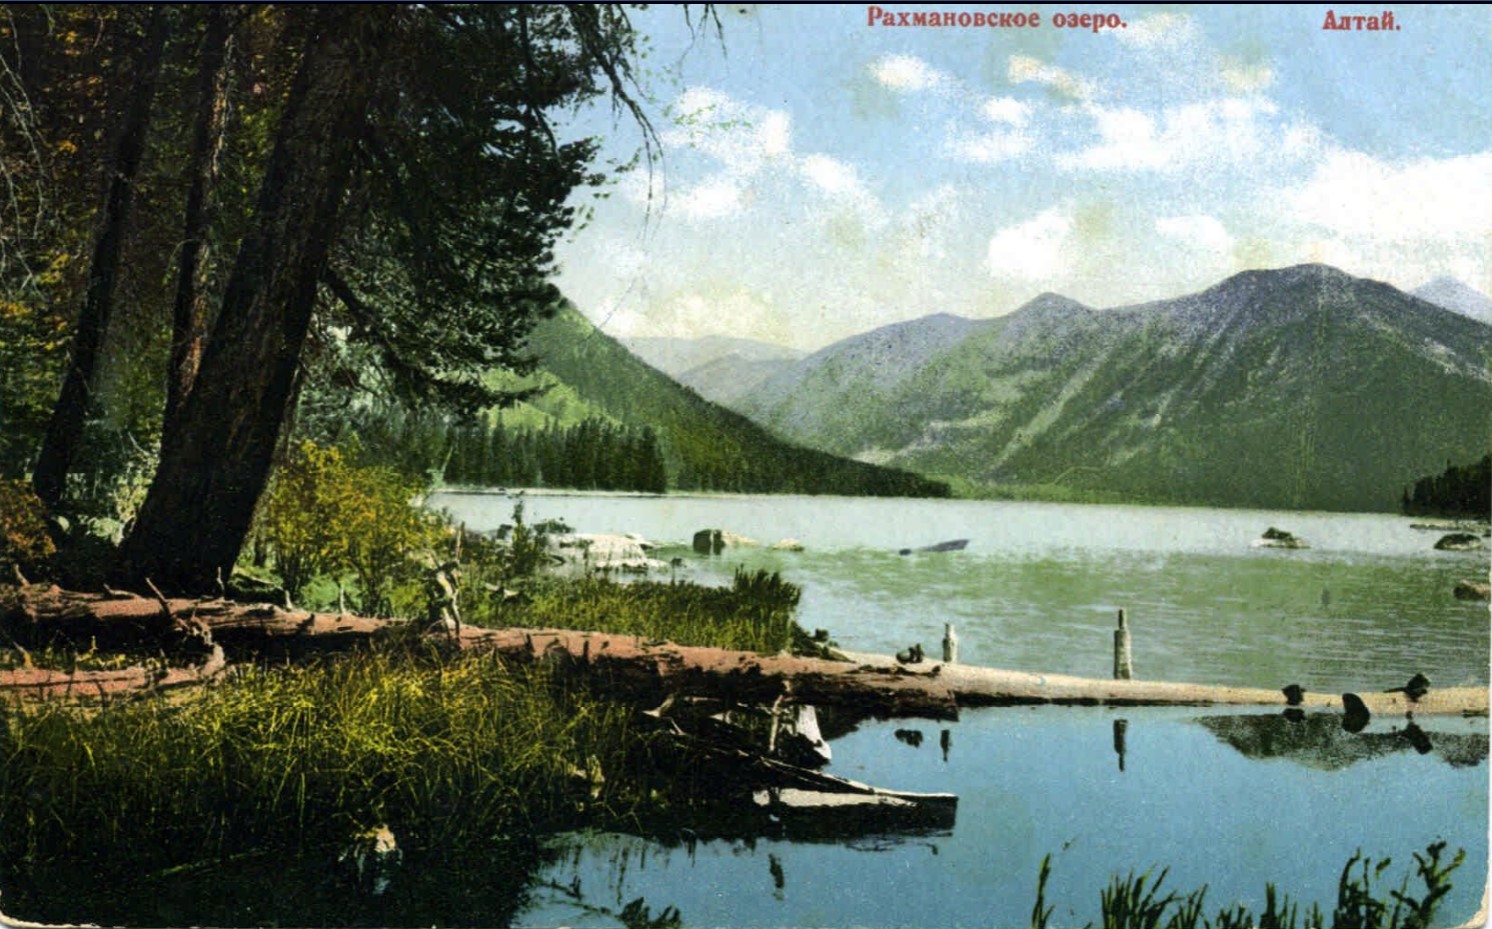 Рахмановское озеро